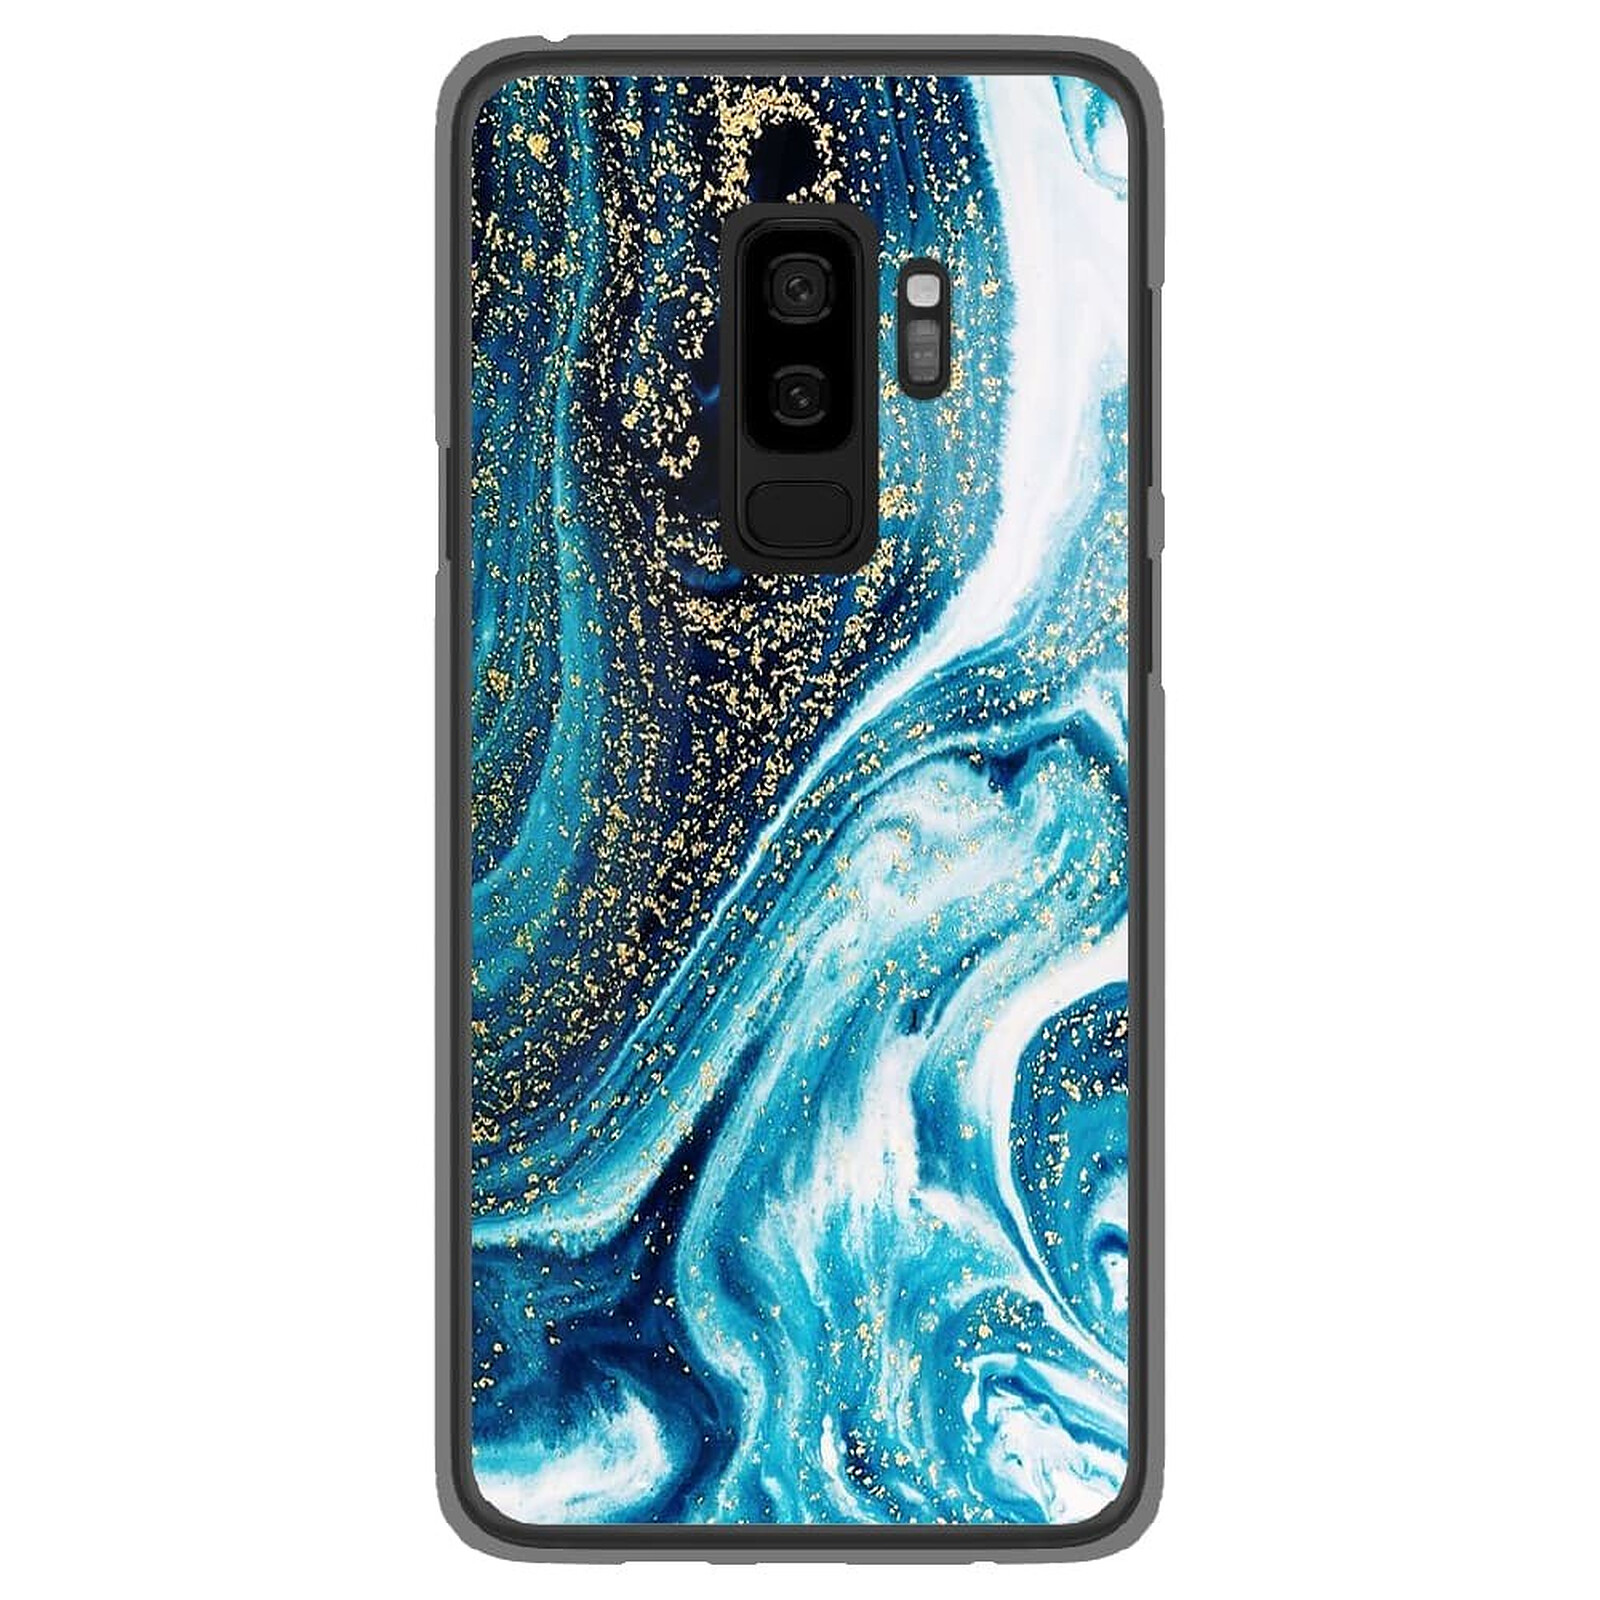 دباب 1001 Coques Coque silicone gel Samsung Galaxy S9 Plus motif Marbre Bleu Pailleté - Coque téléphone 1001Coques sur LDLC